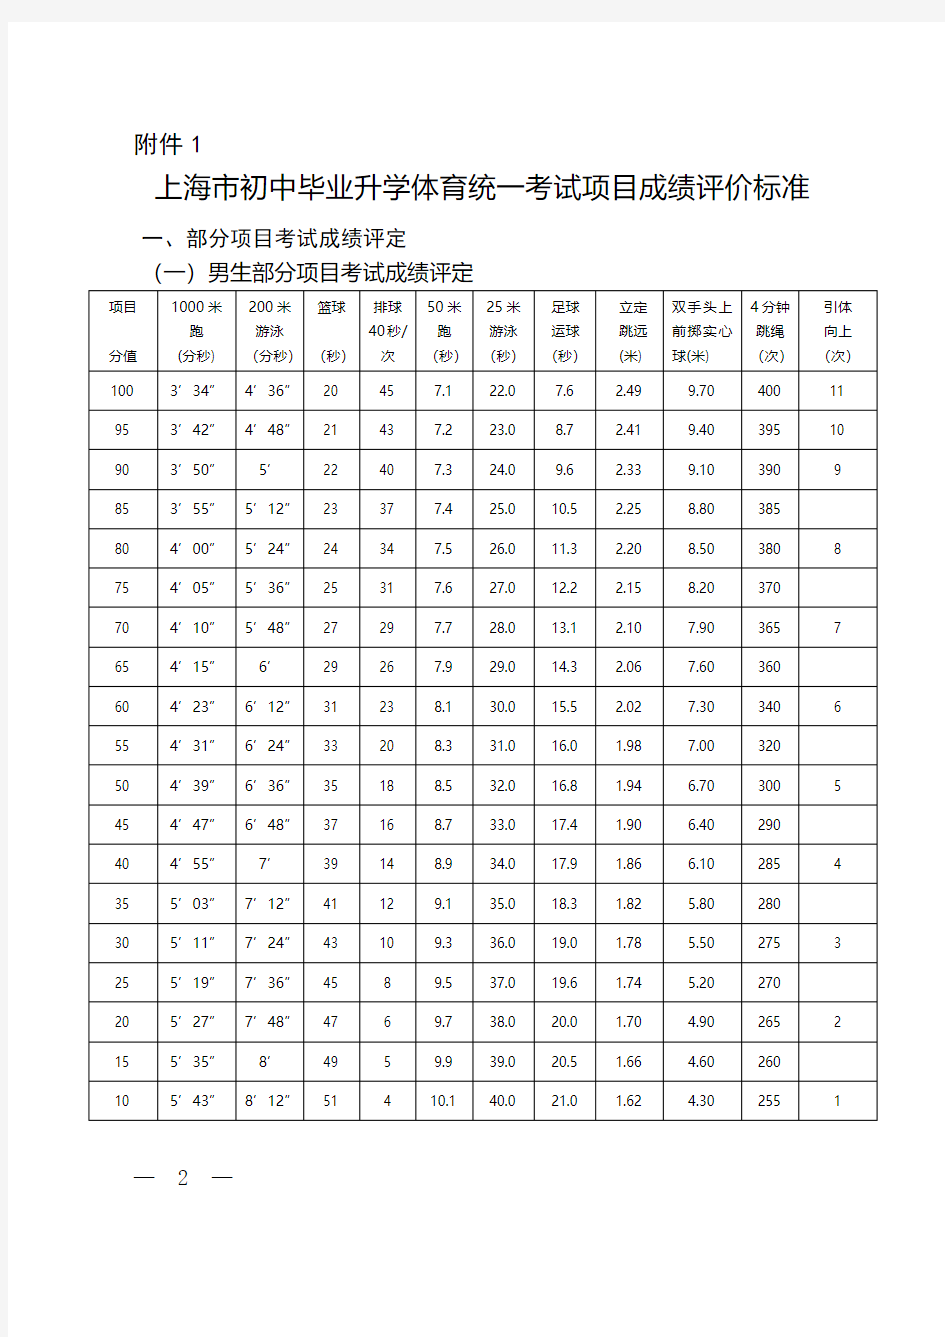 上海市初中毕业升学体育统一考试项目成绩评价标准